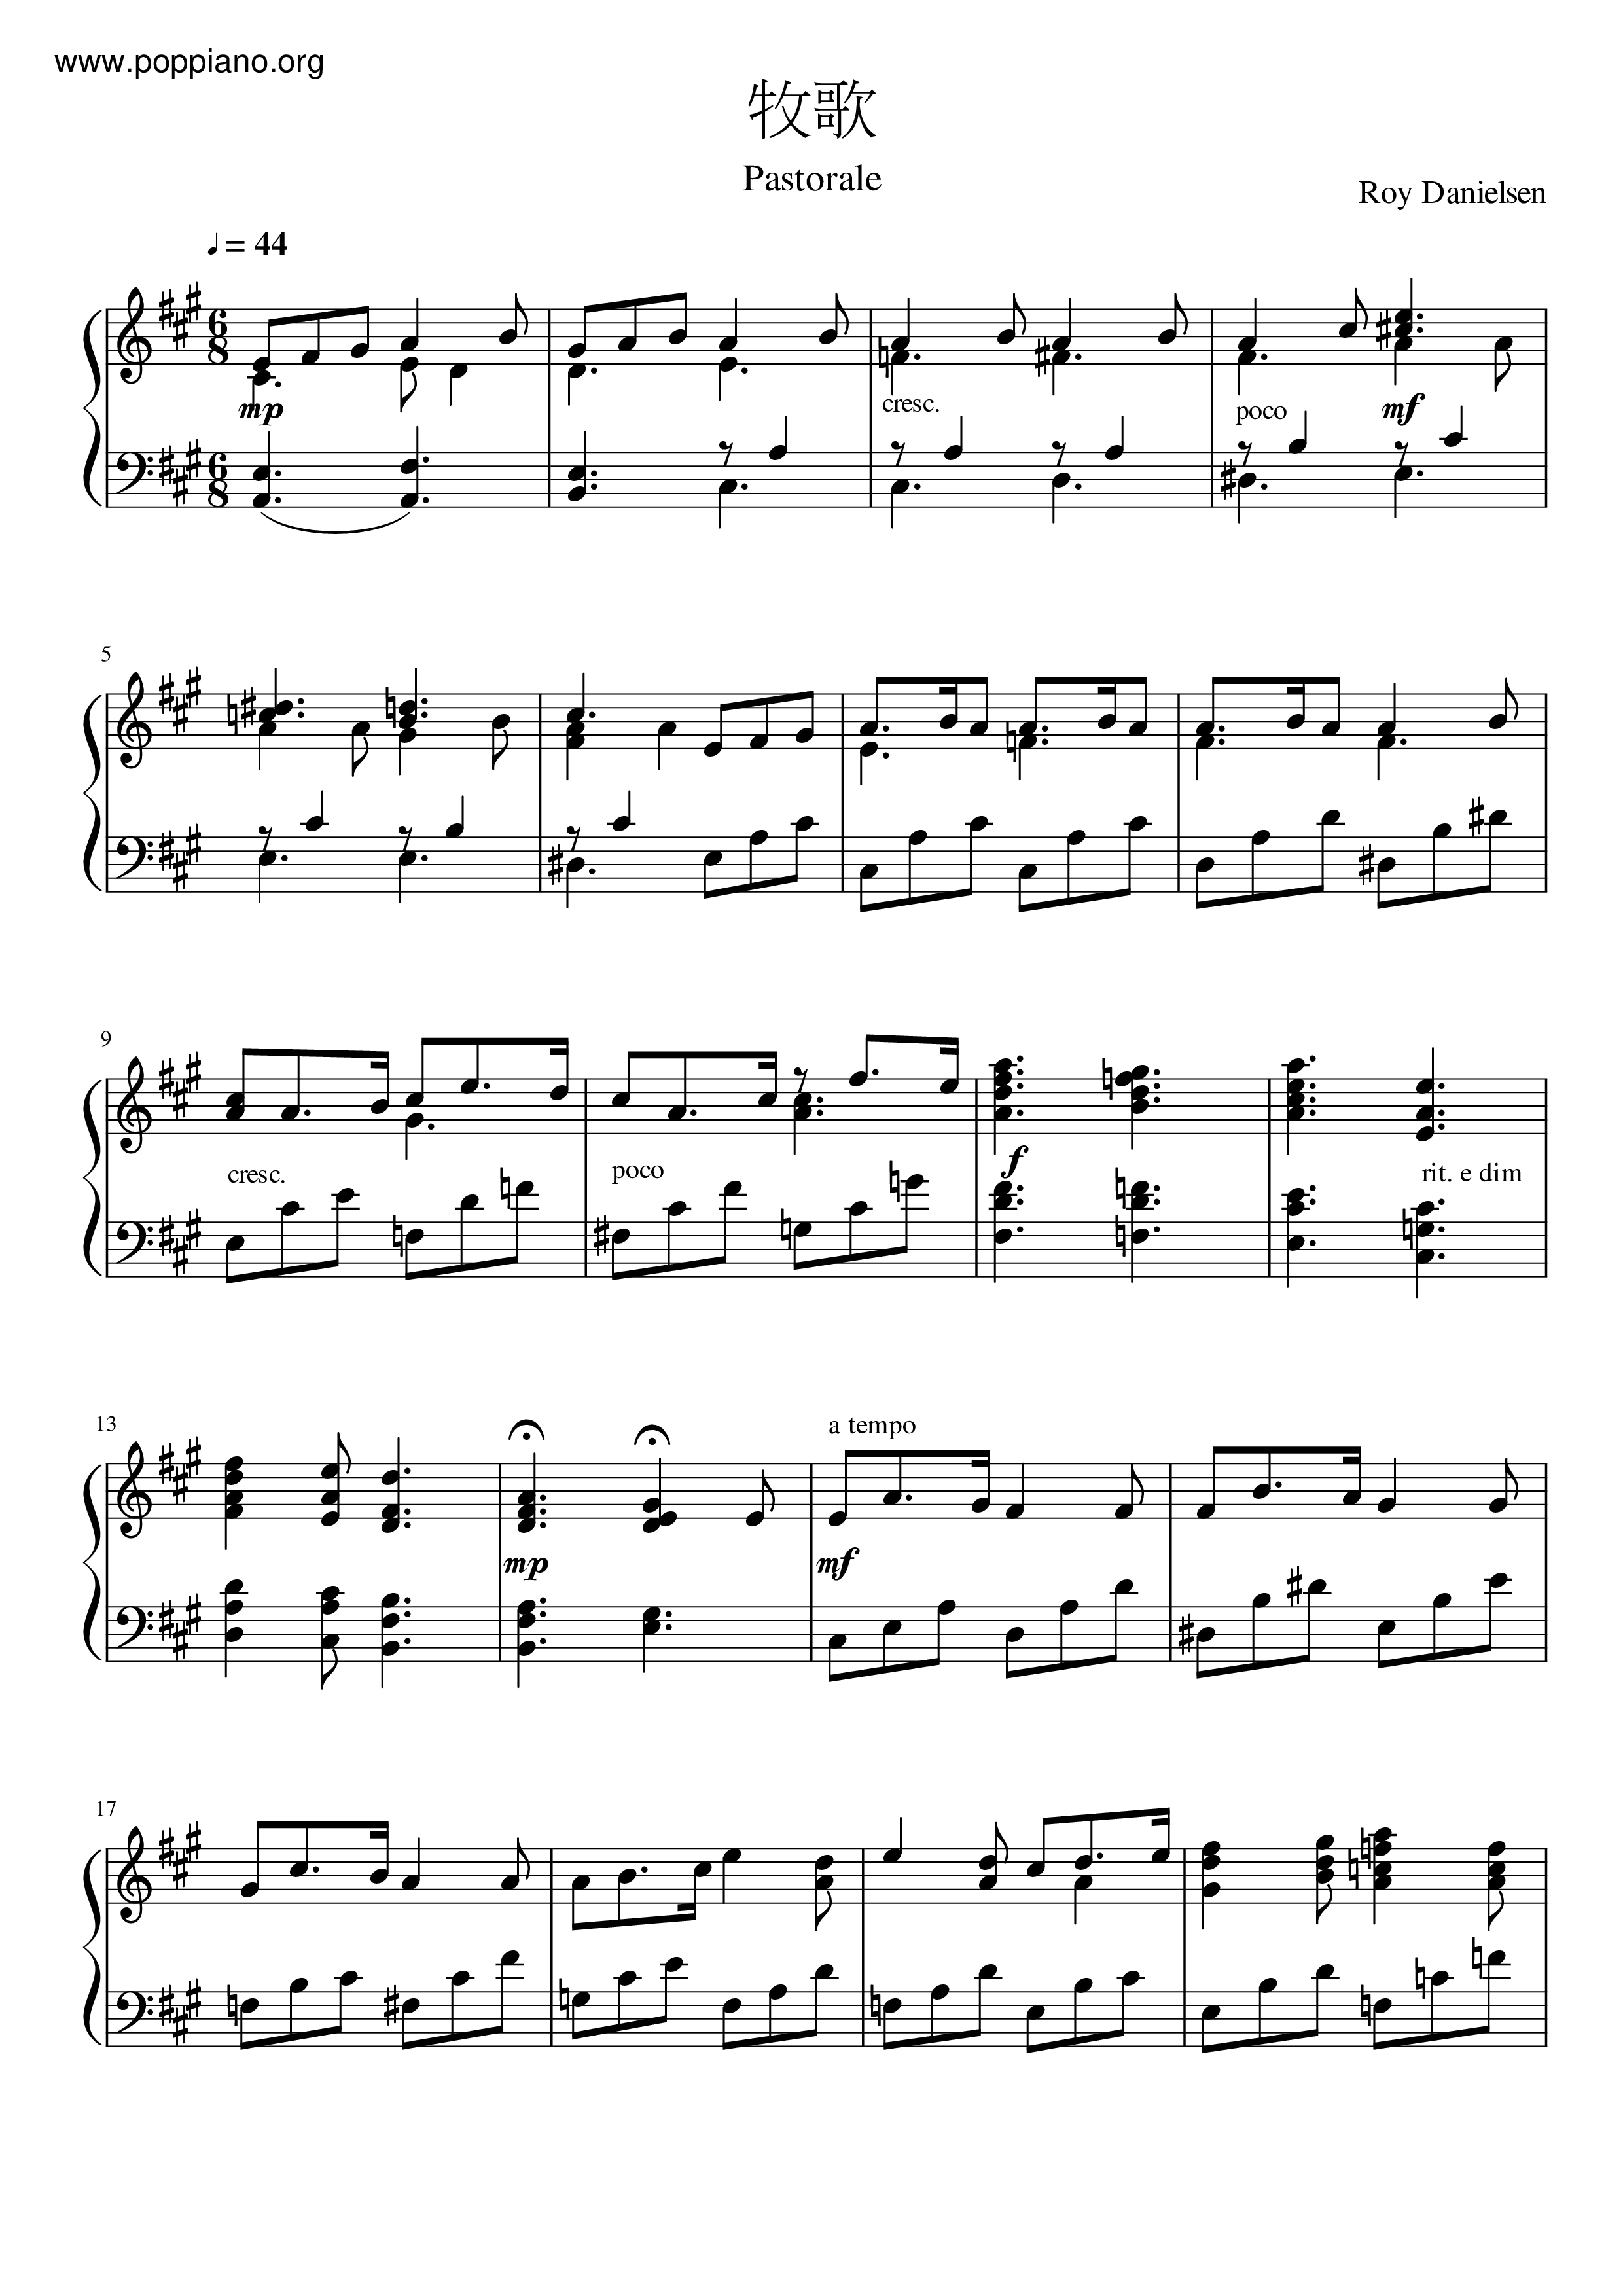 ☆詩歌 - 牧歌 ピアノ譜pdf- 香港ポップピアノ協会 無料PDF楽譜 